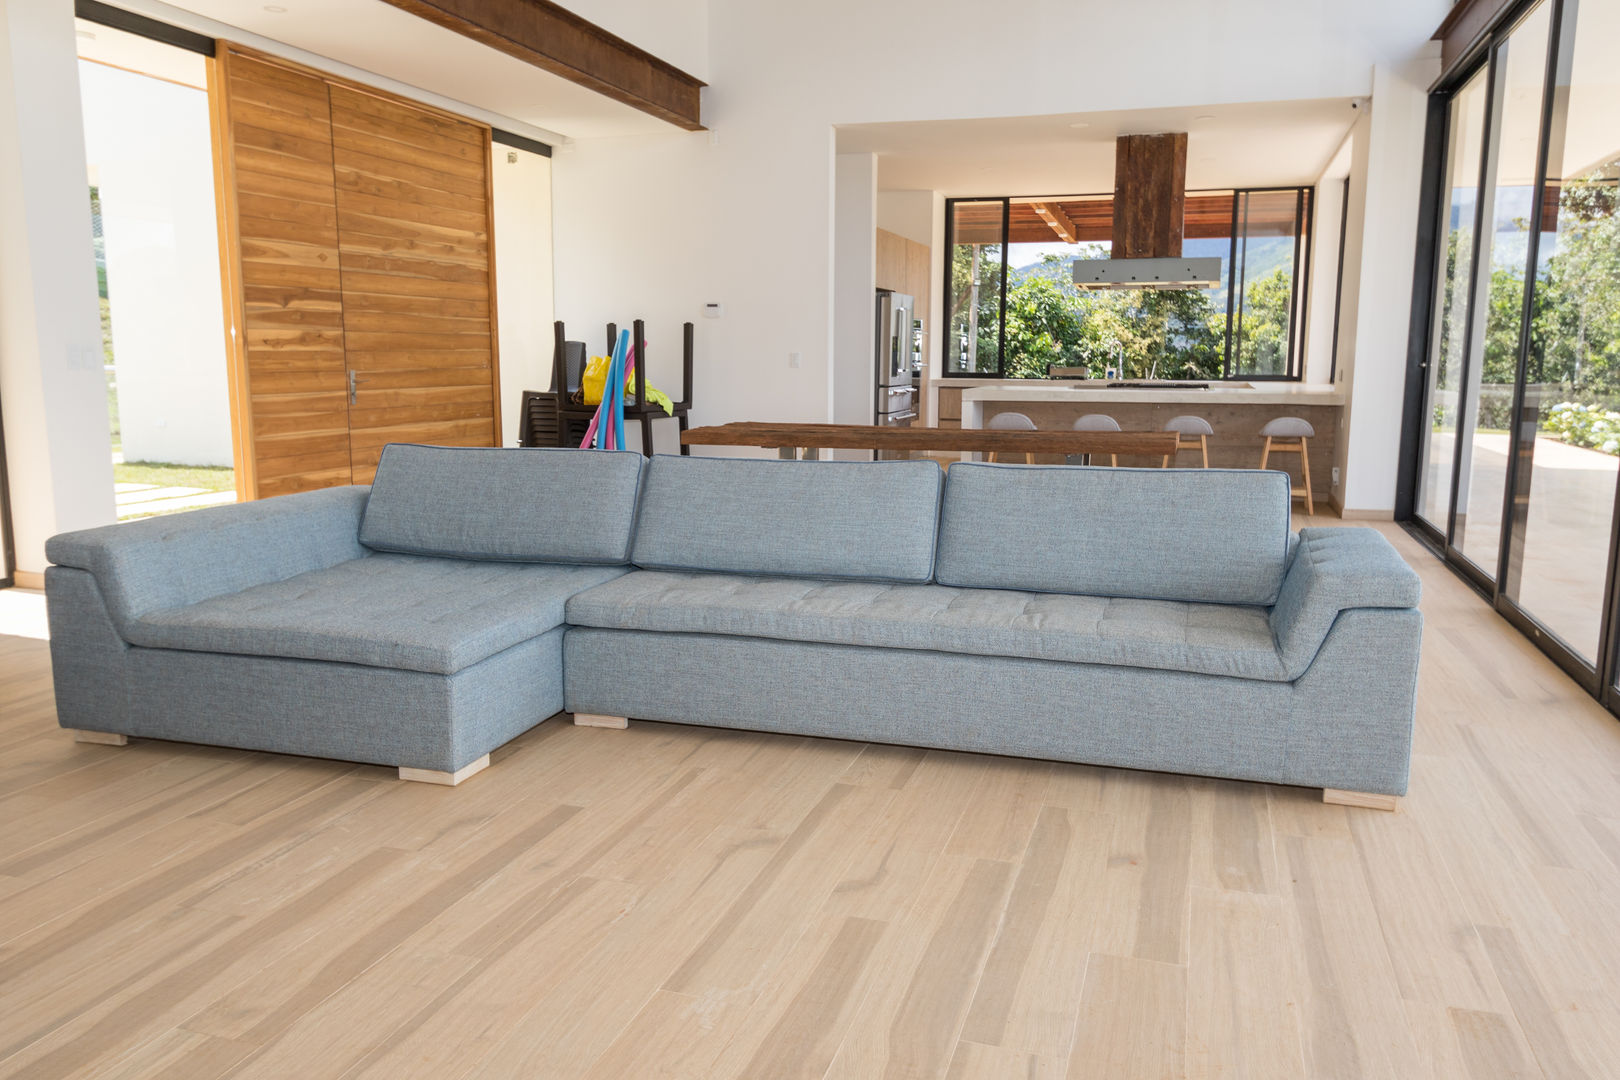 Diseño de interiores con sofás: Cómo incorporarlos en la